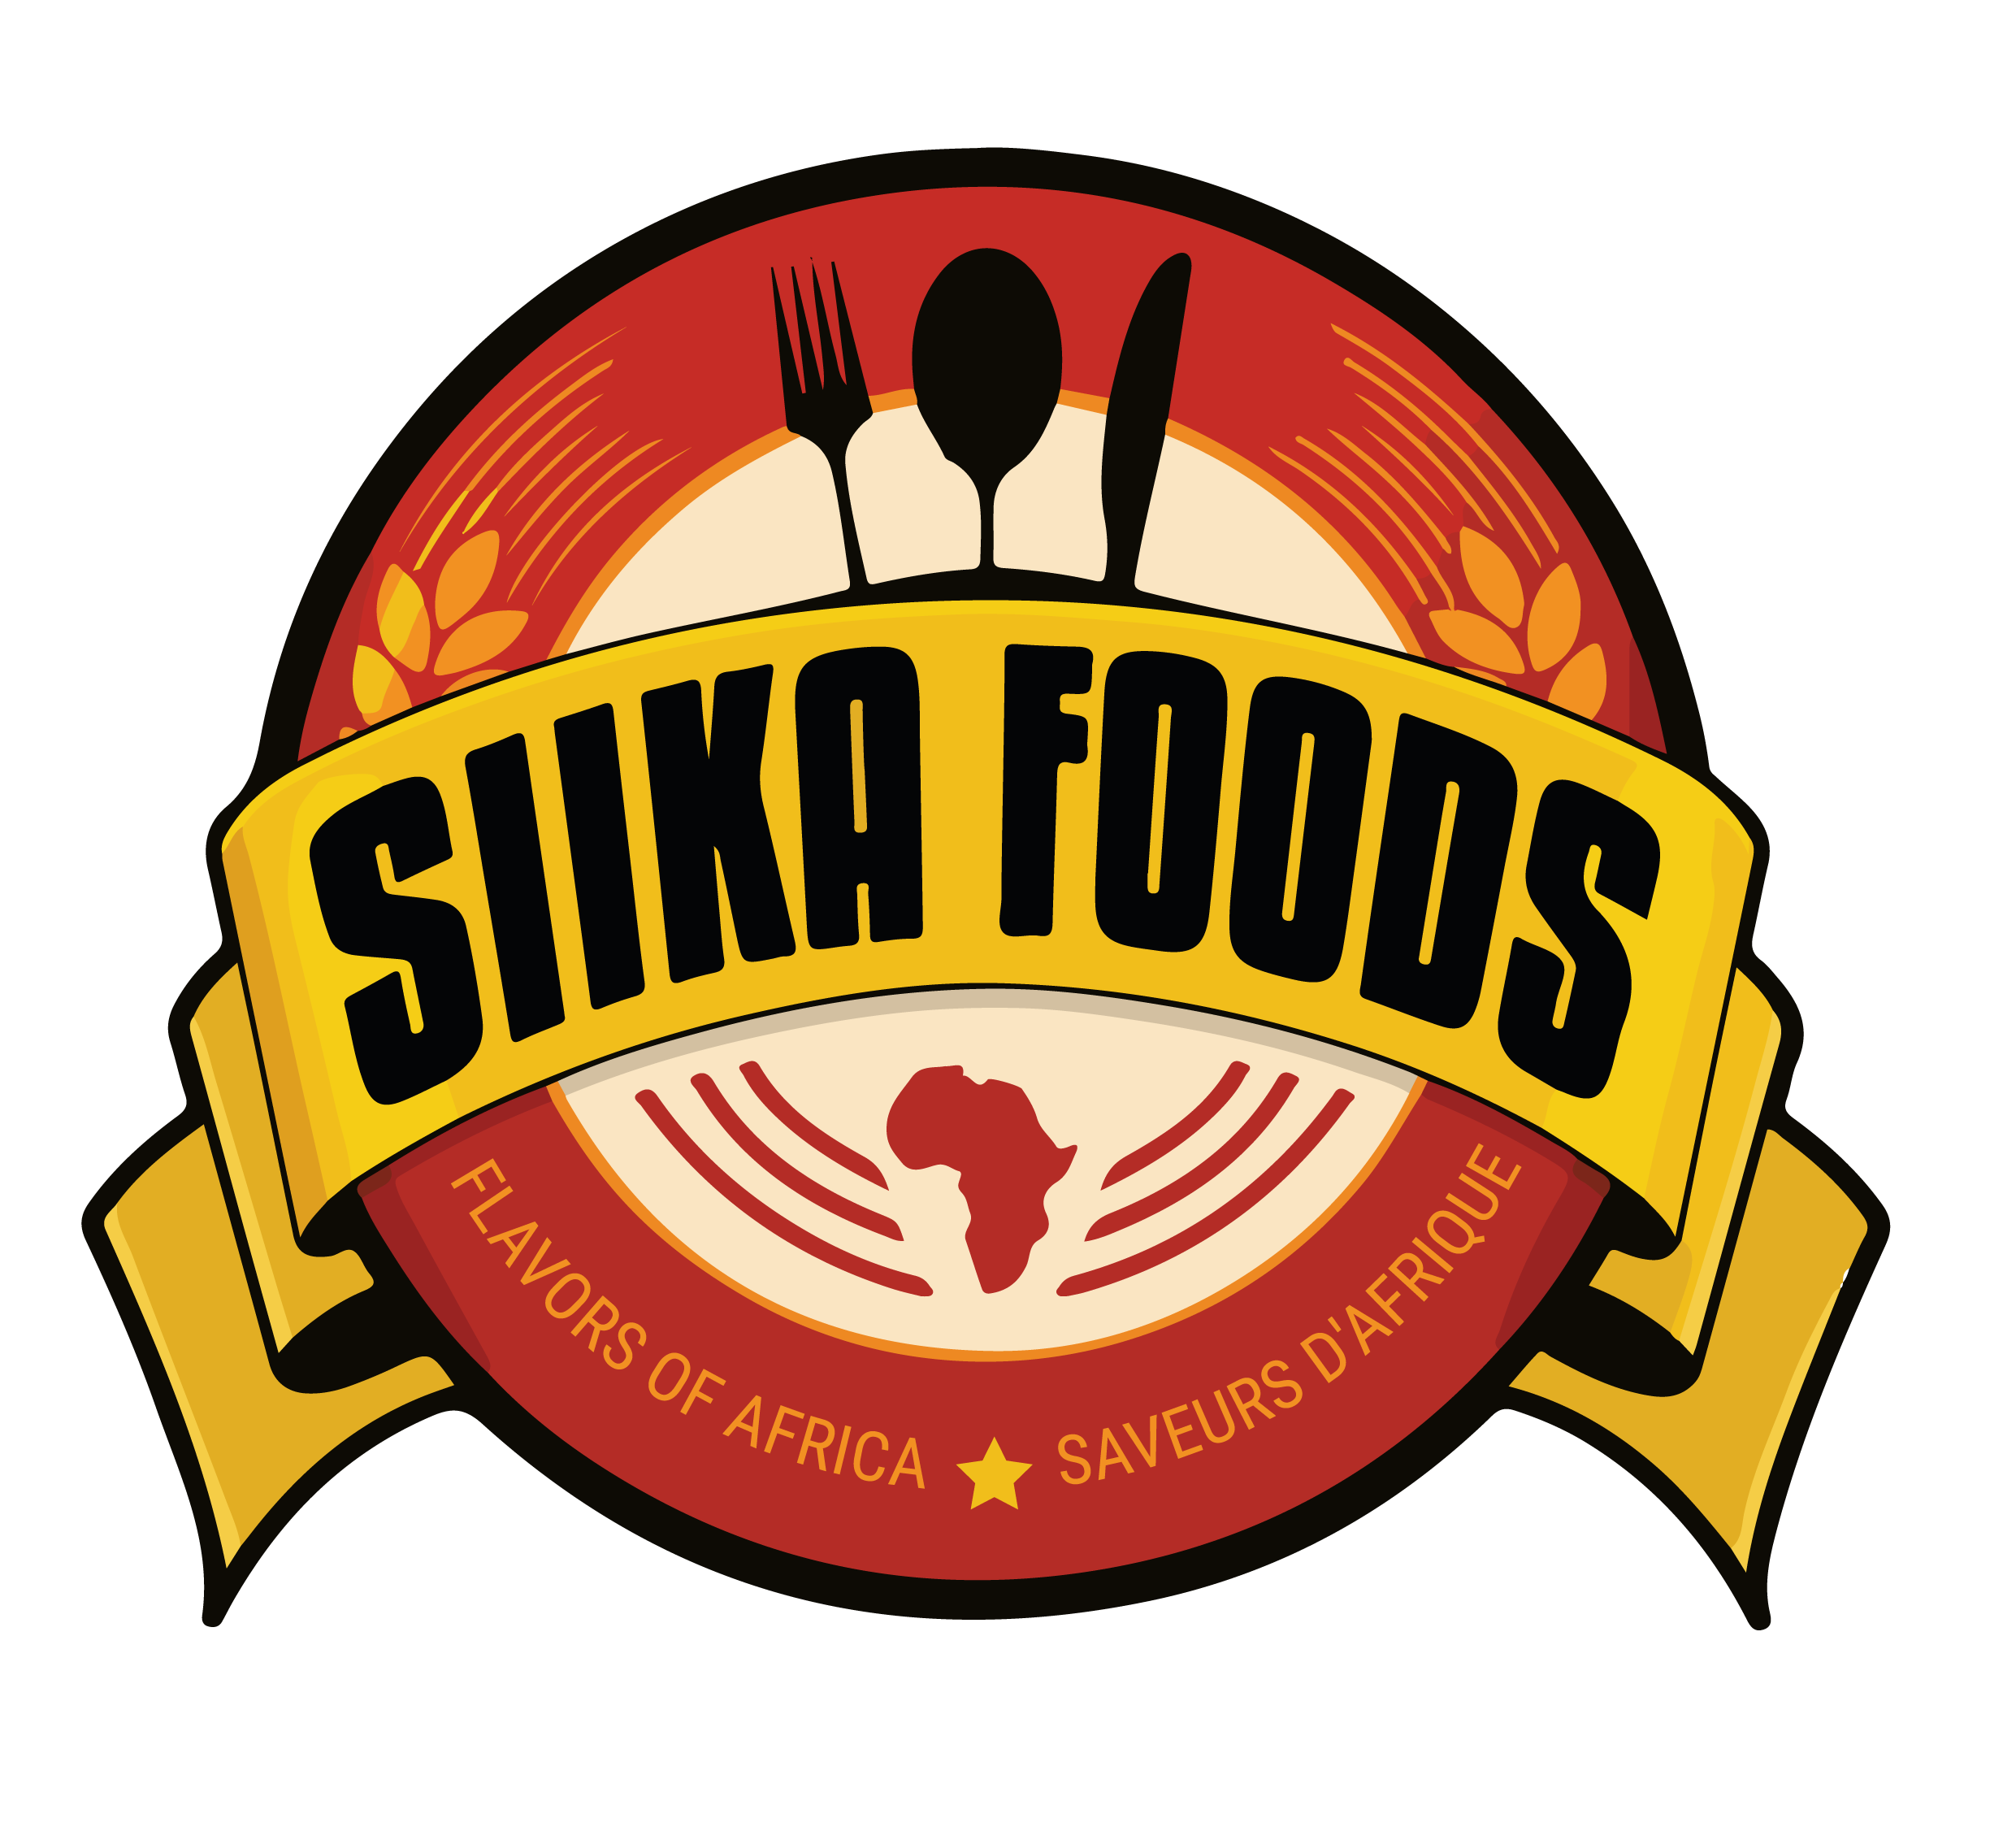 Siika Foods Company Logo